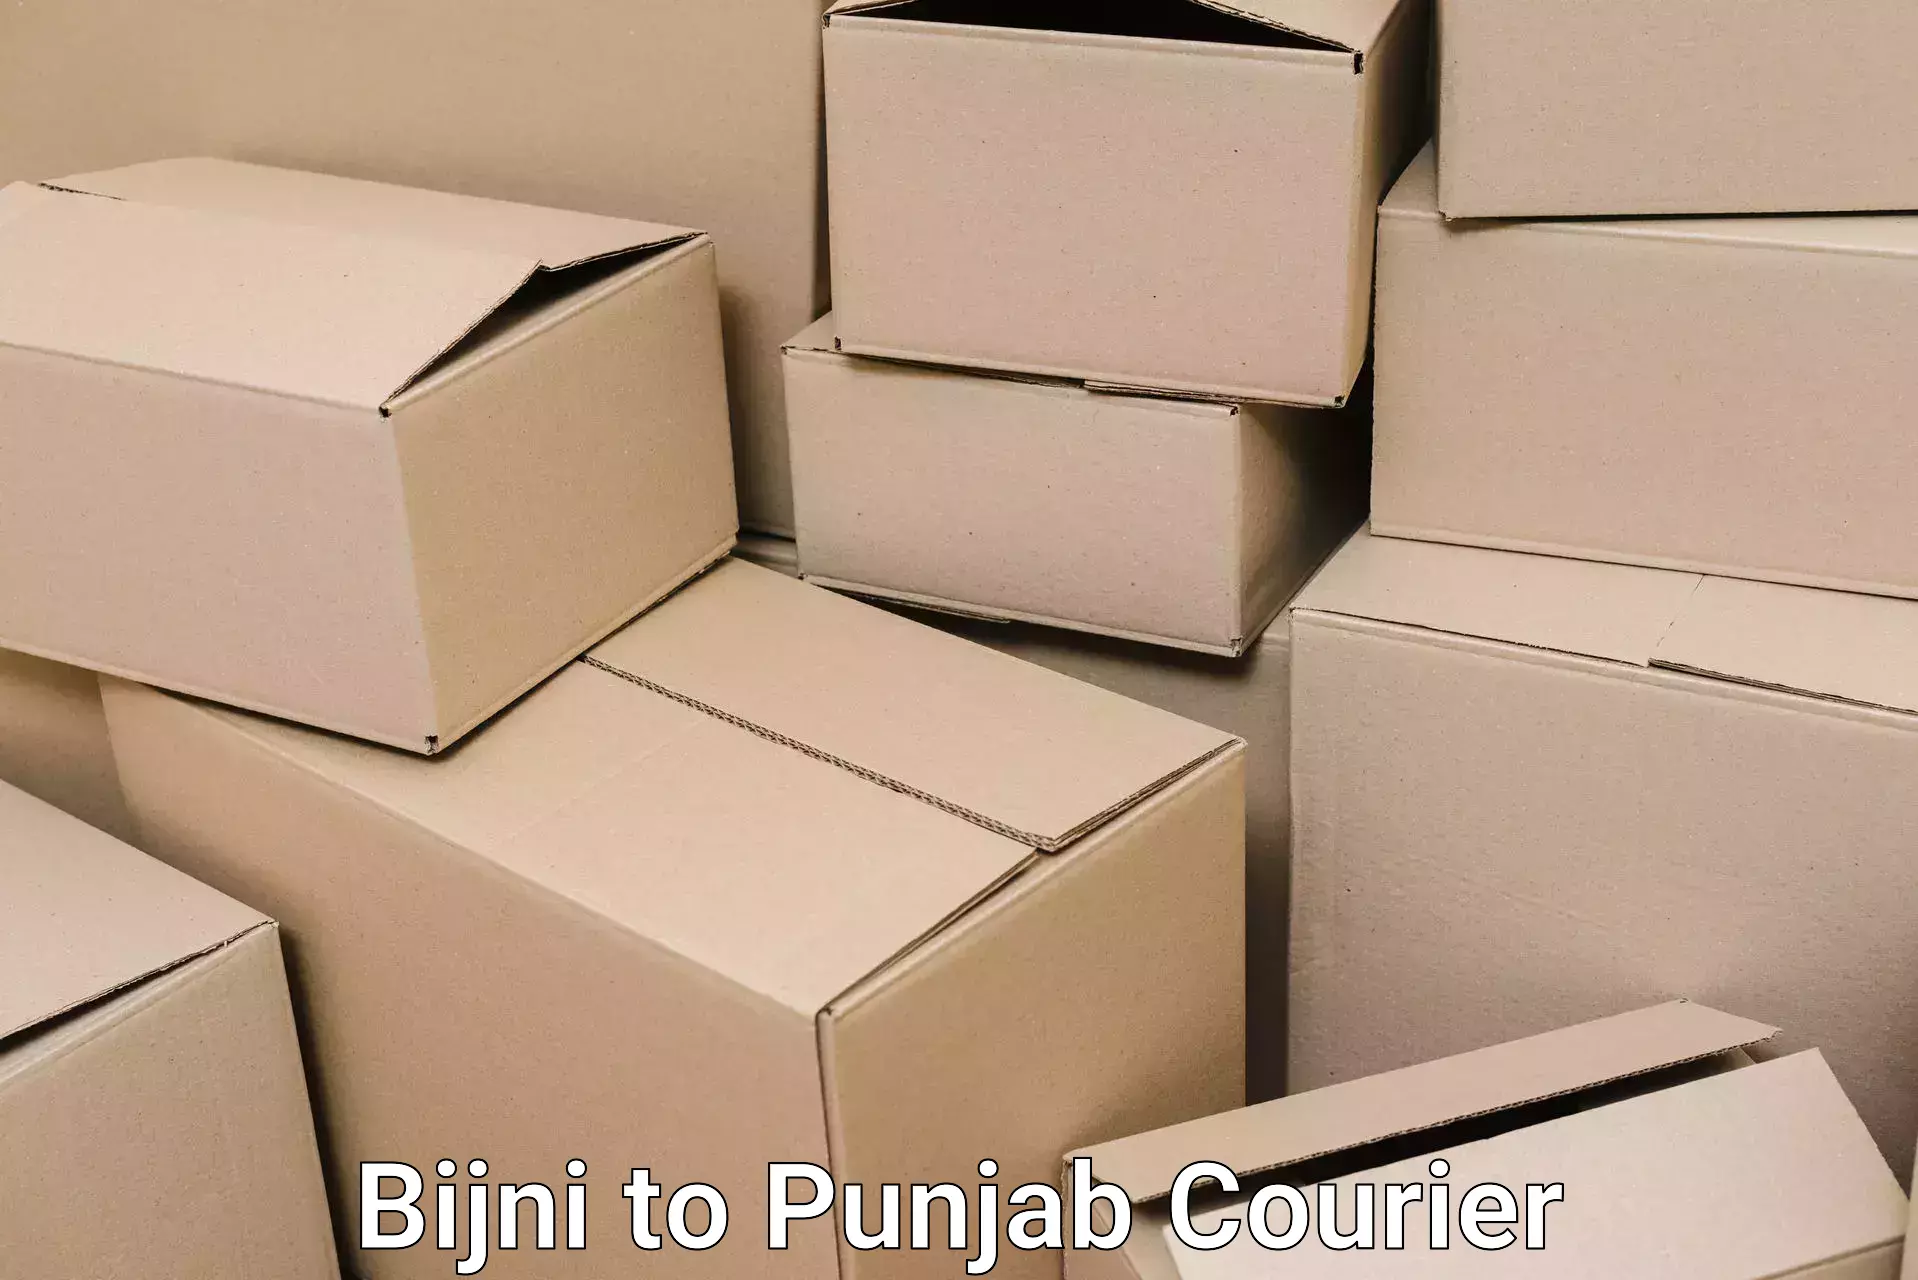 Furniture transport company Bijni to Anandpur Sahib